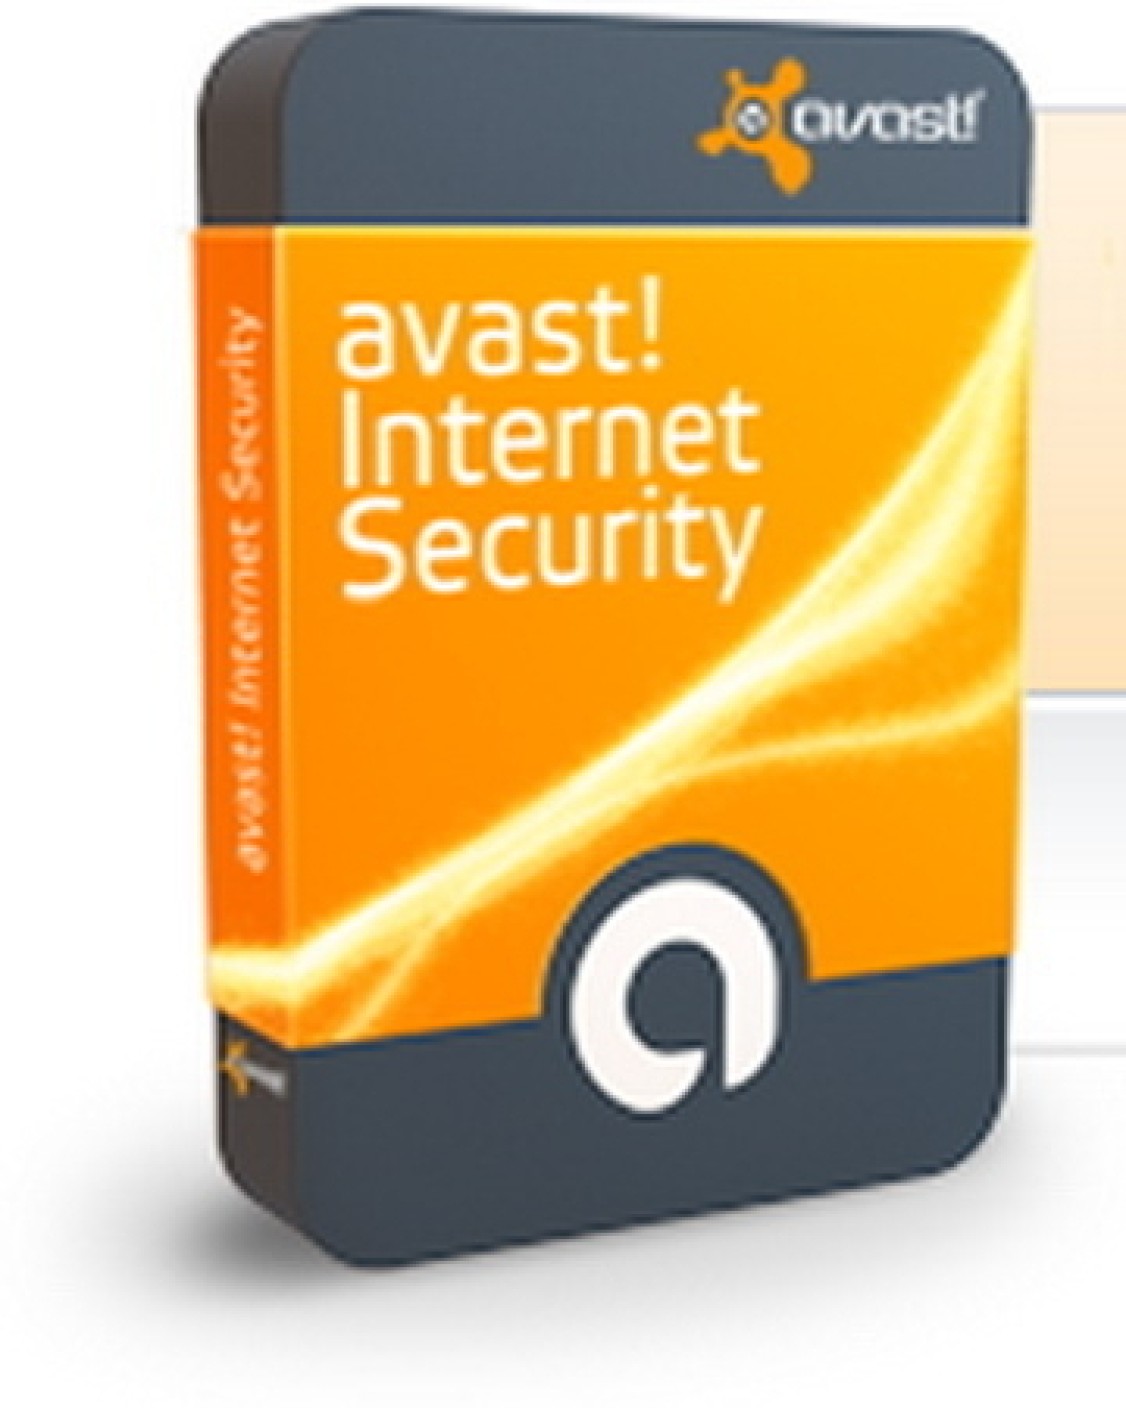 avast antivirus one year free download